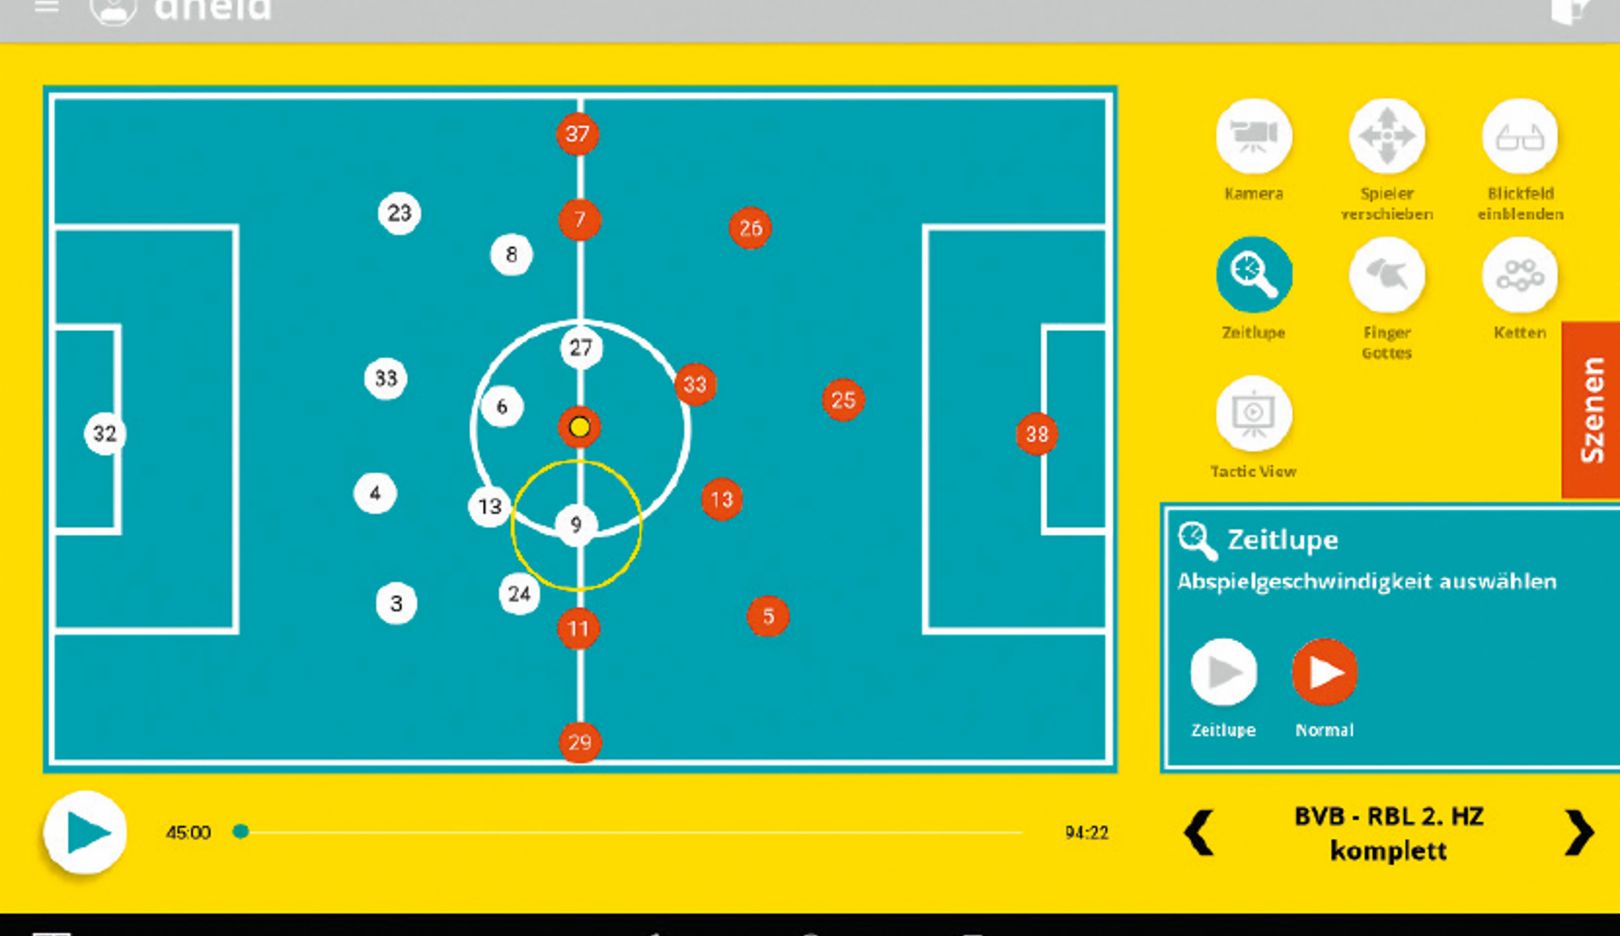 Gezielte Vorbereitung auf den kommenden Gegner: Spielsysteme können im Soccerbot360 simuliert werden. So lernt der Spieler, Lösungen zu finden.